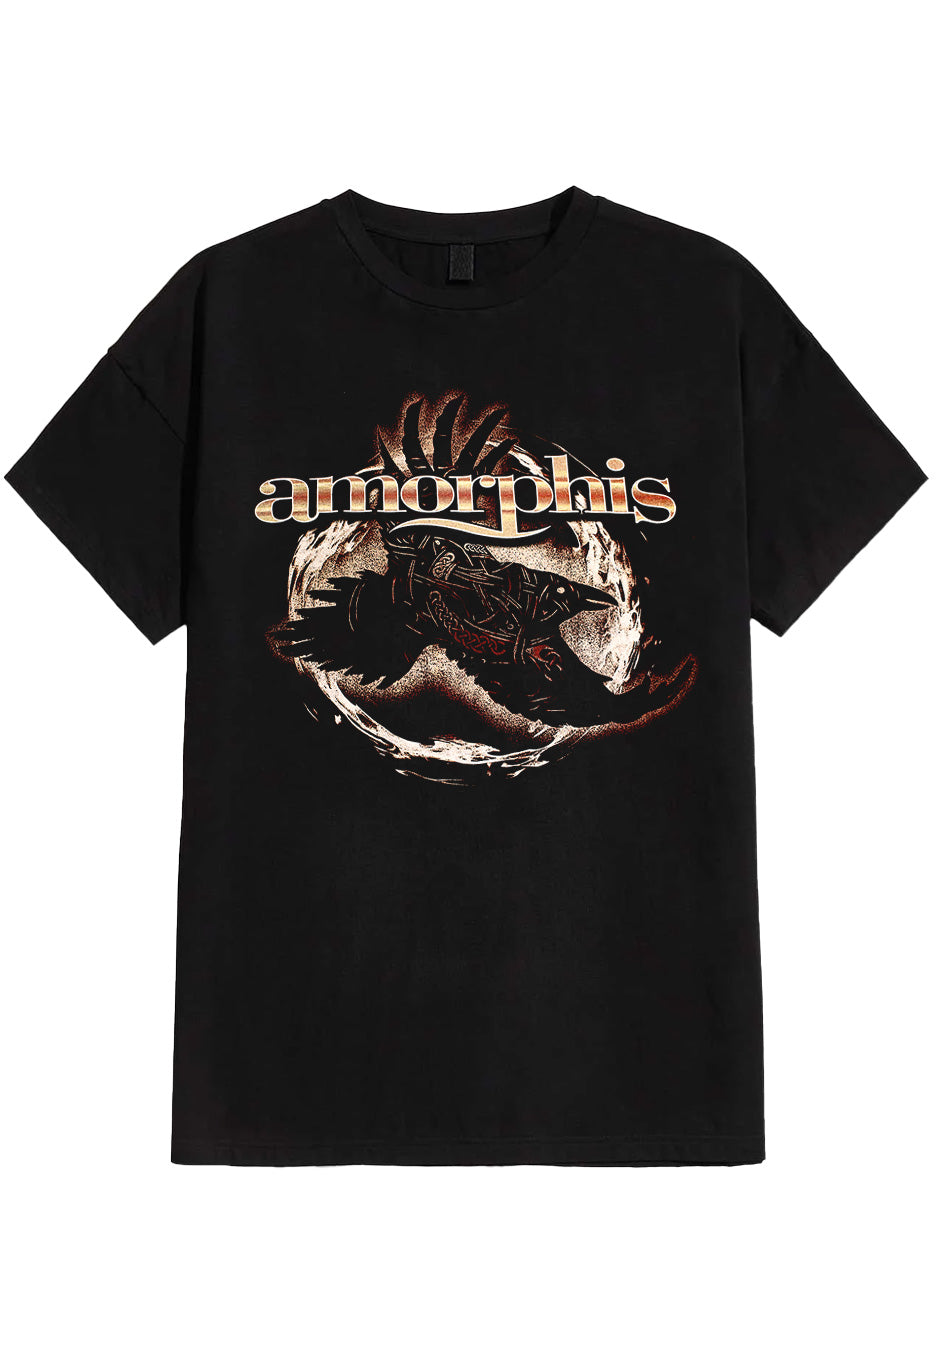 Amorphis - Halo European Tour - T-Shirt